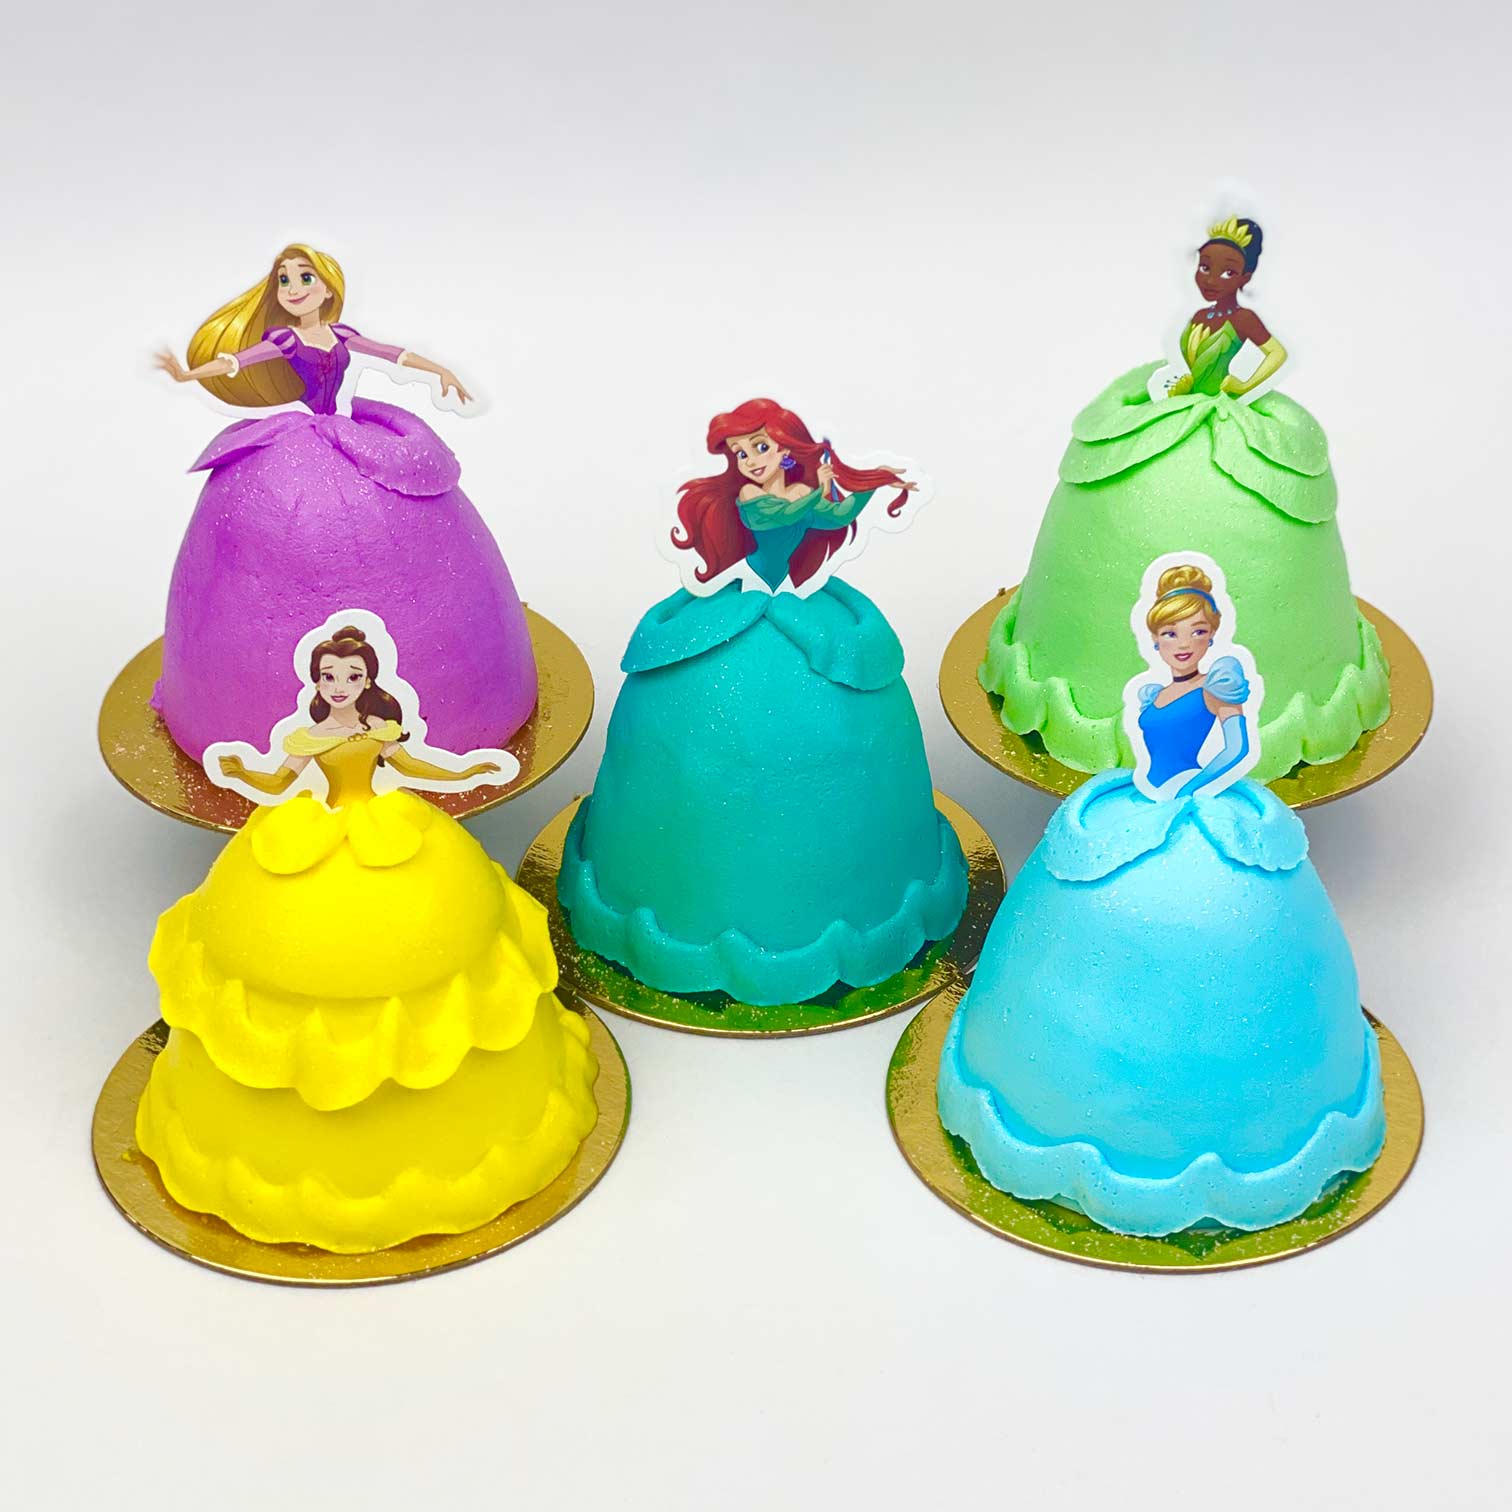 3D Princess Cupcakes: Ariel, Belle, Cinderella, Rapunzel, and Tiana